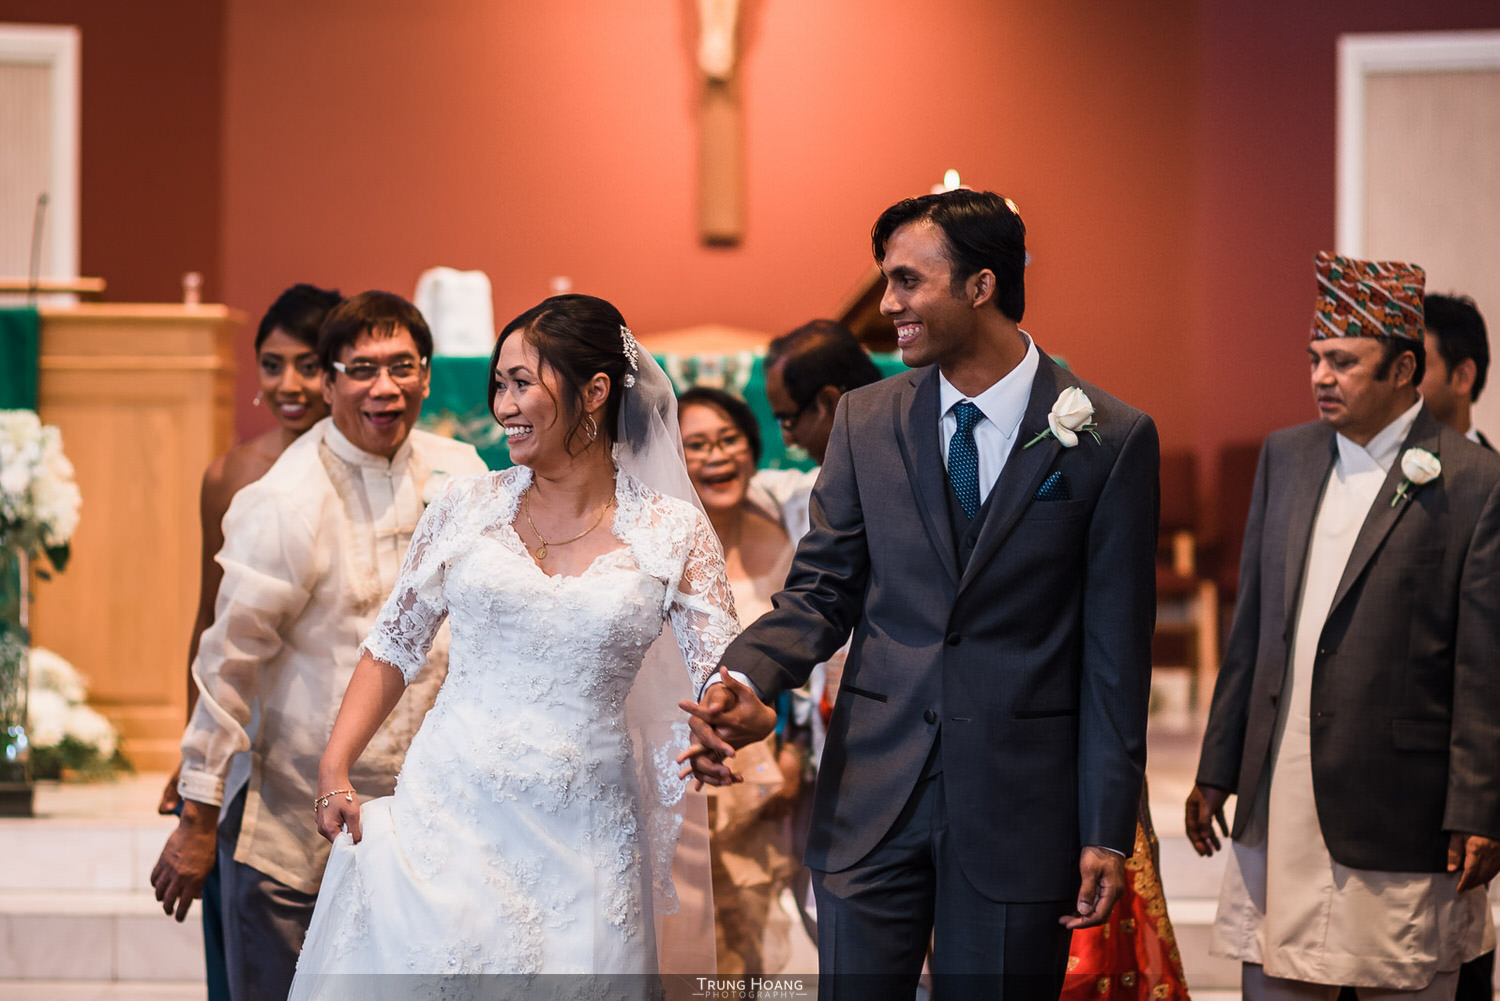 24-bride-and-groom-walk-down-aisle.jpg